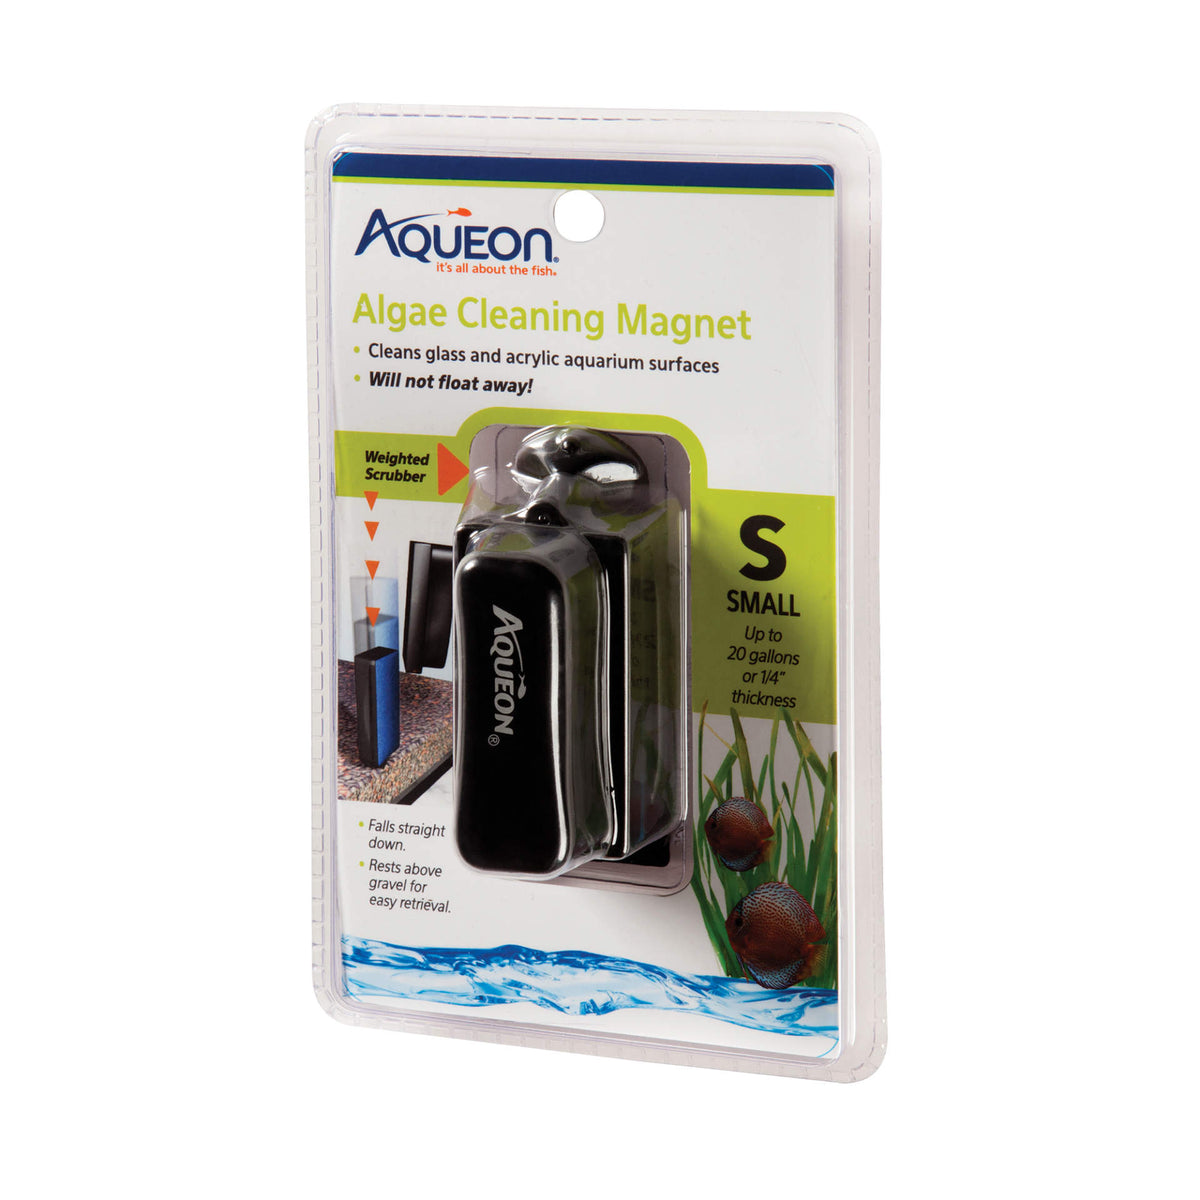 Aqueon - Algae Cleaning Magnet